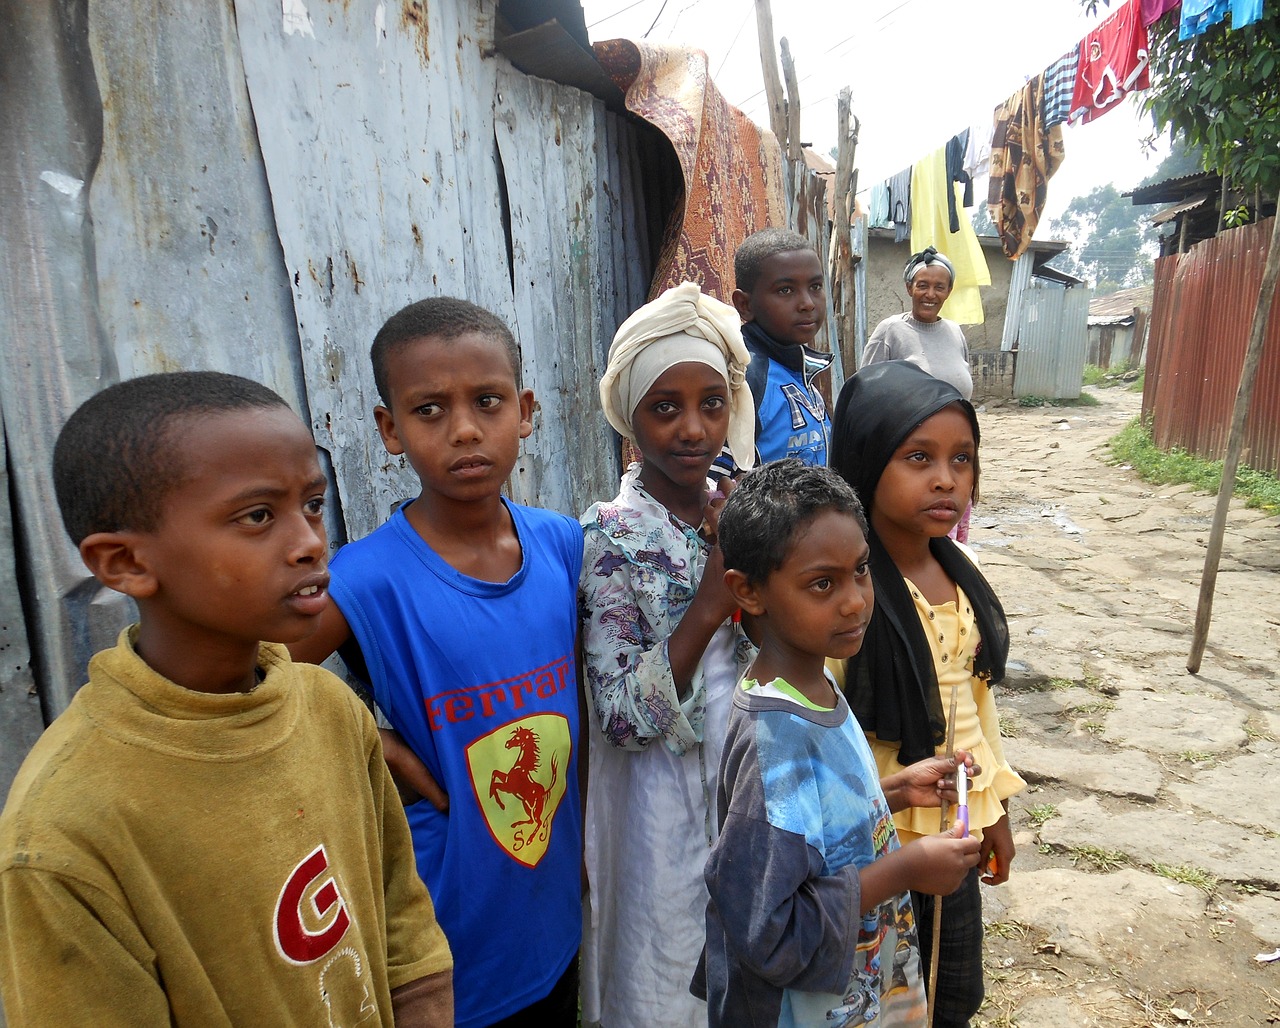 children ethiopia slum free photo